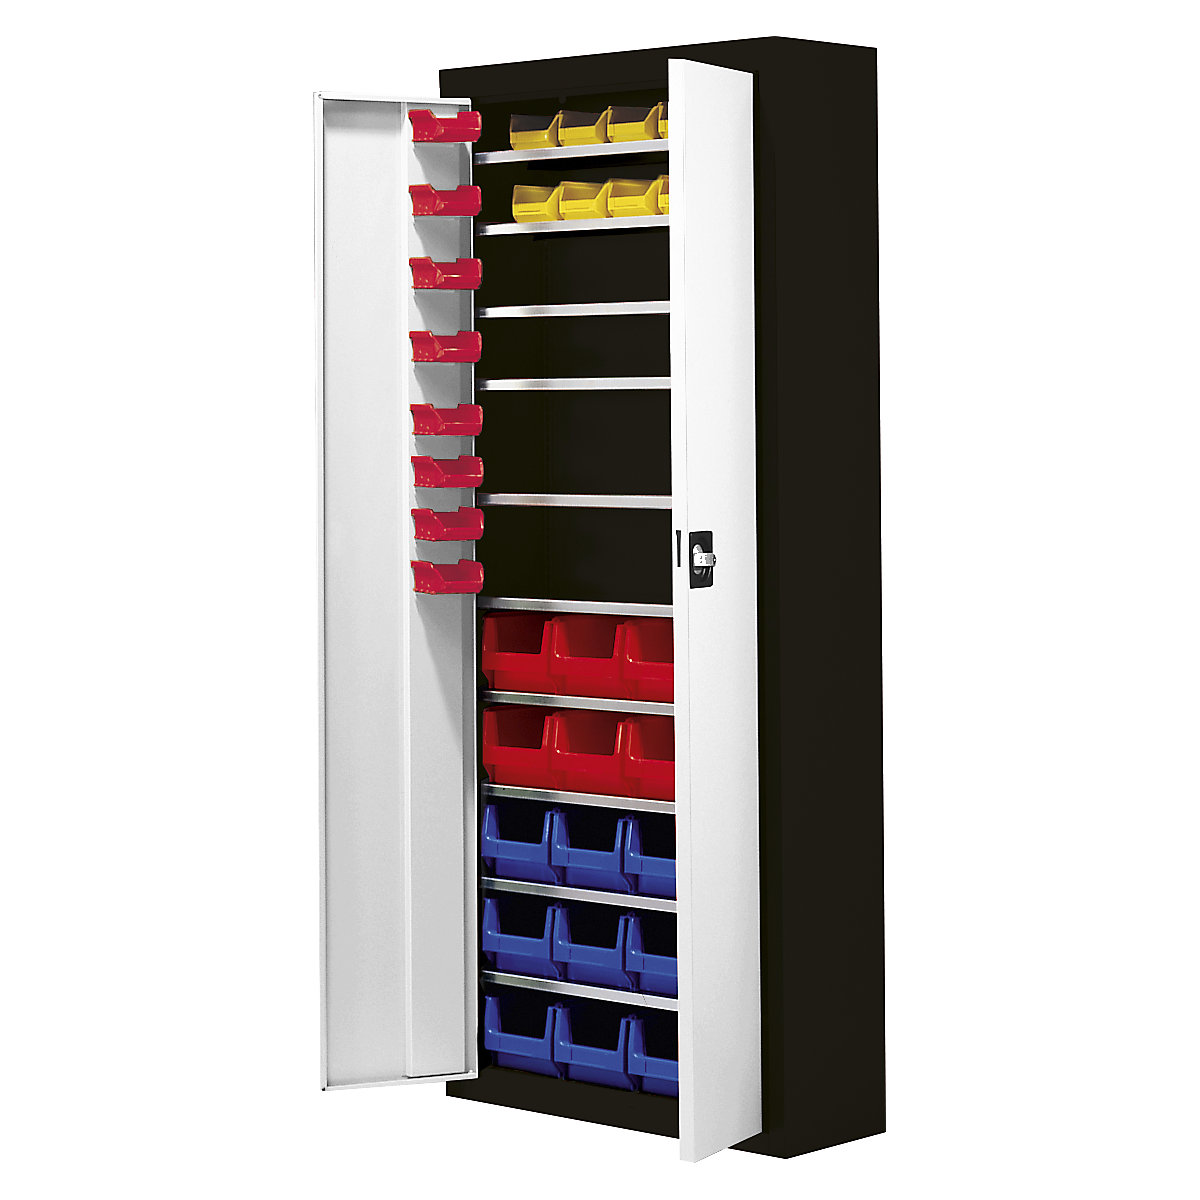 Skladiščna omara z odprtimi skladiščnimi posodami – mauser, VxŠxG 1740 x 680 x 280 mm, 48 posod, dve barvi, korpus črn, vrata siva, od 3 kosov-4